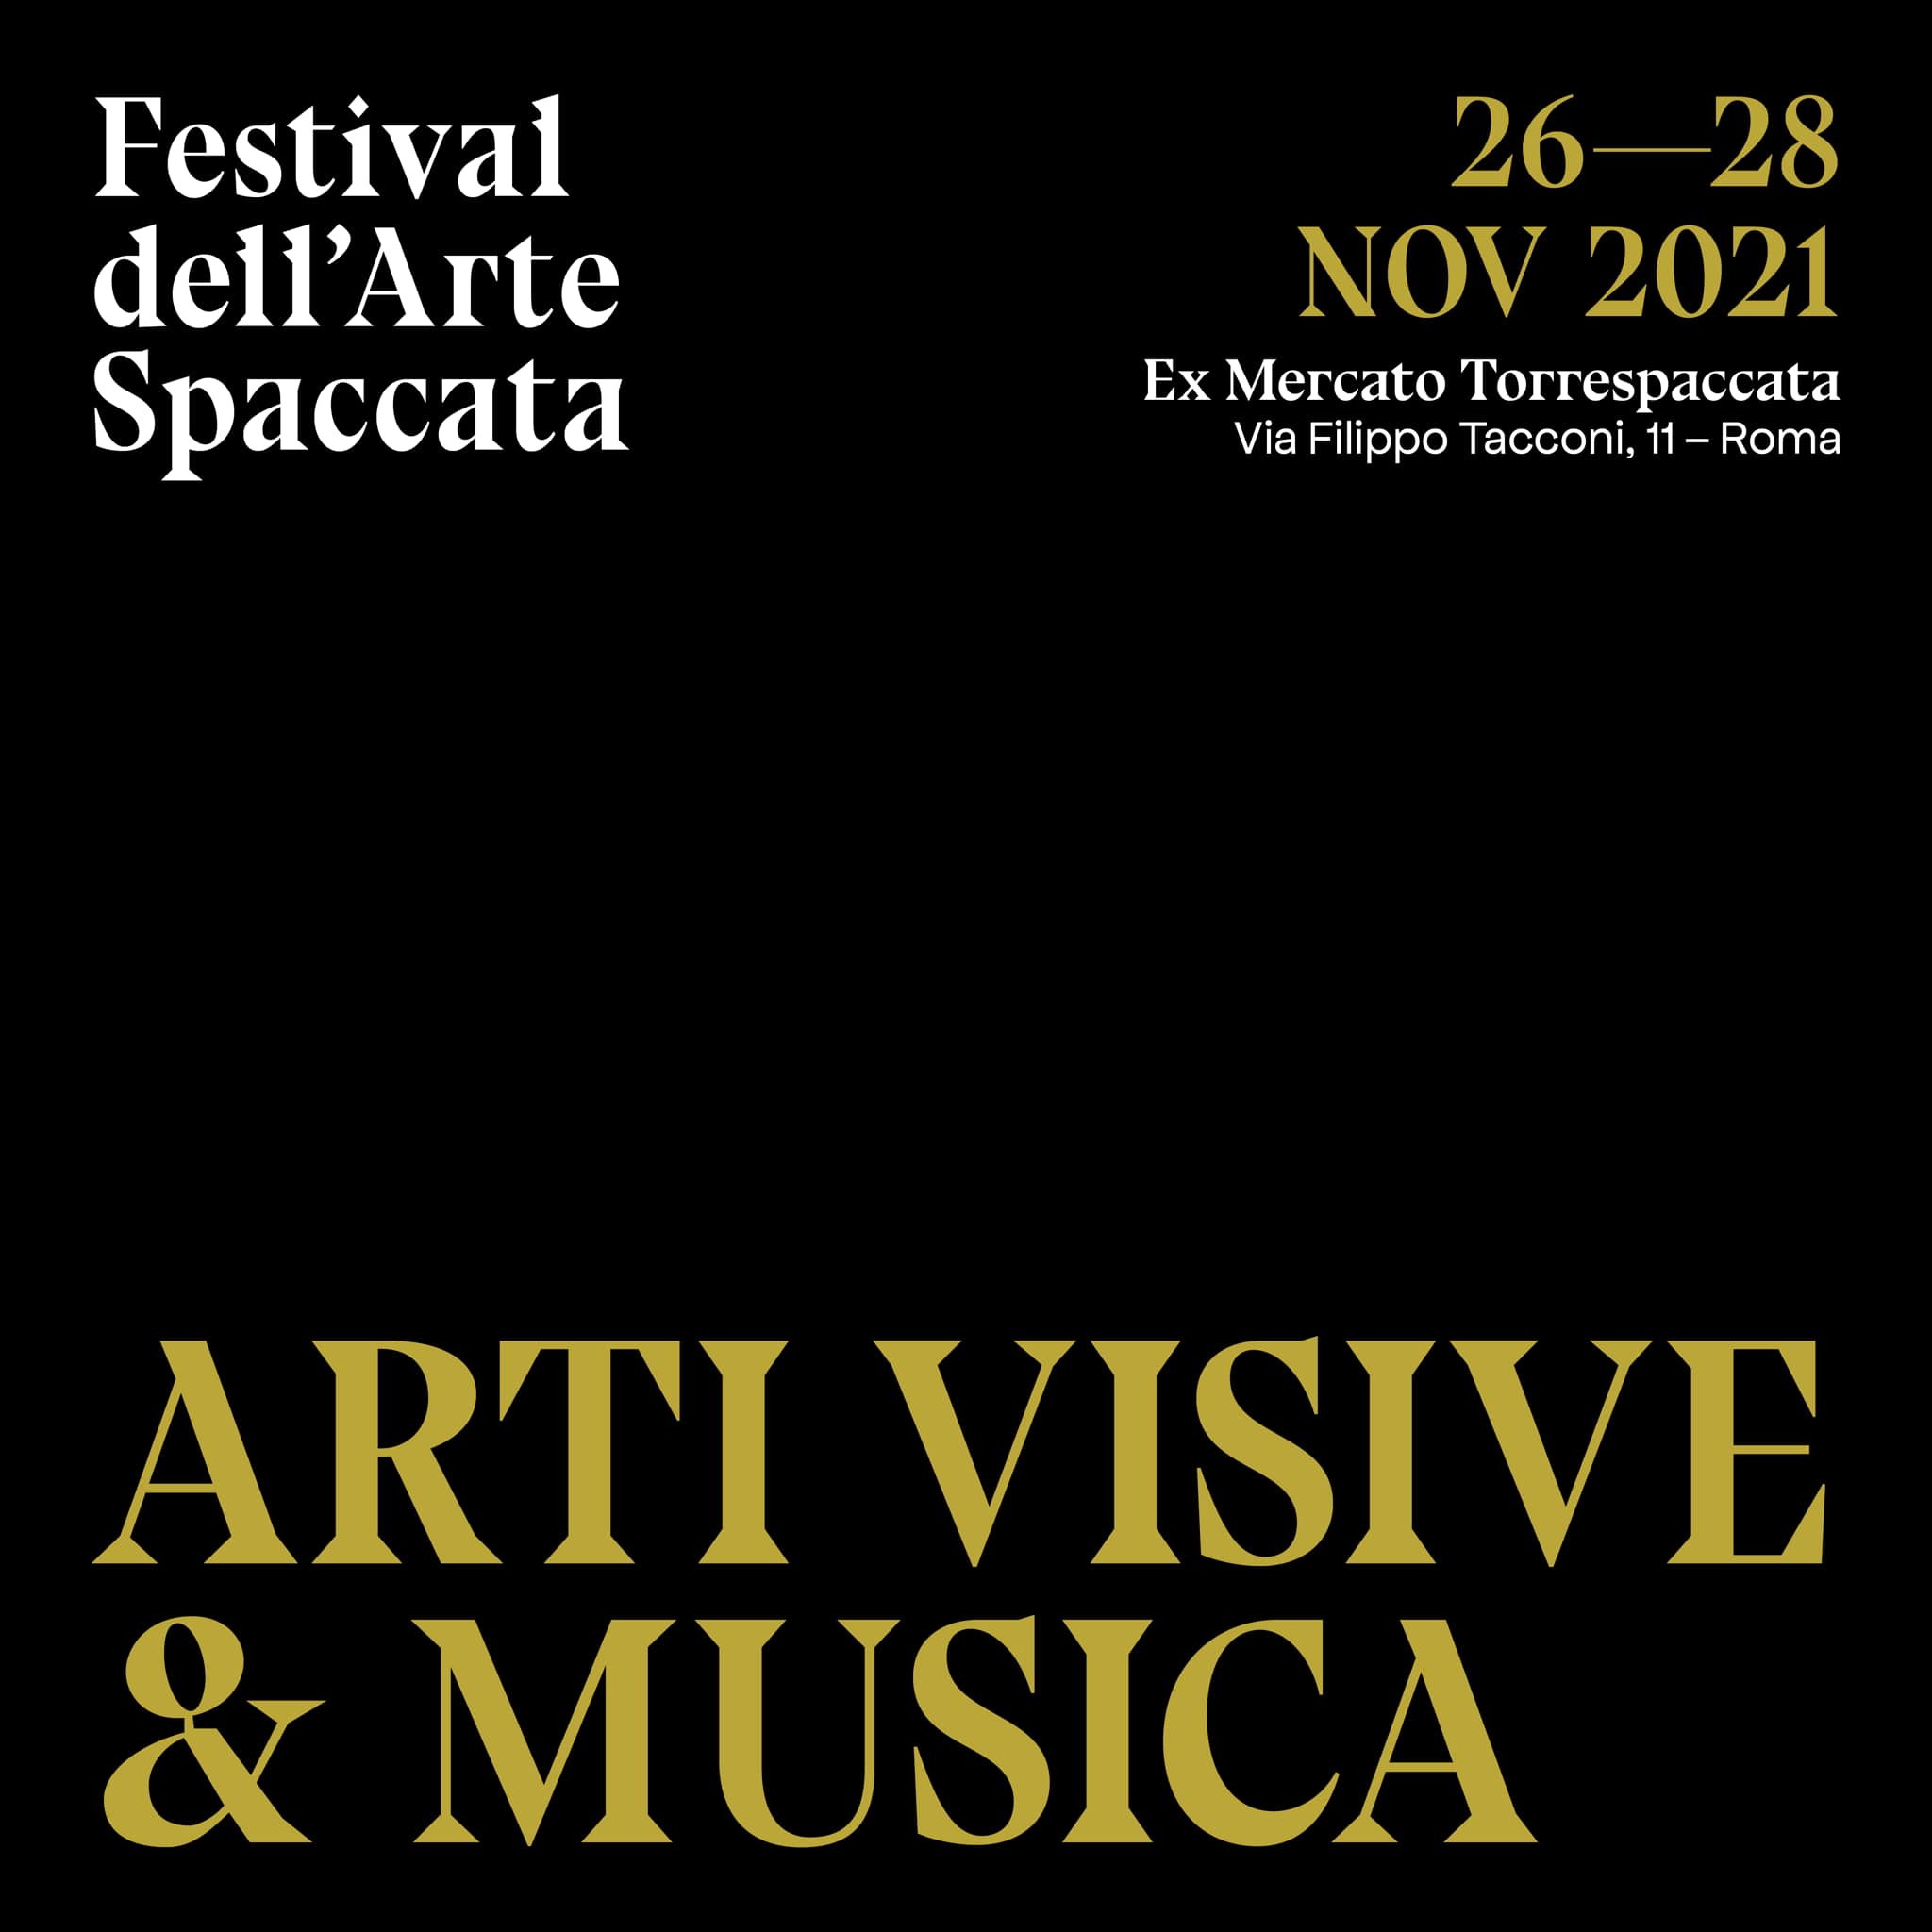 Festival dell'Arte Spaccata, Arti visive e Musica, 26-28 novembre 2021